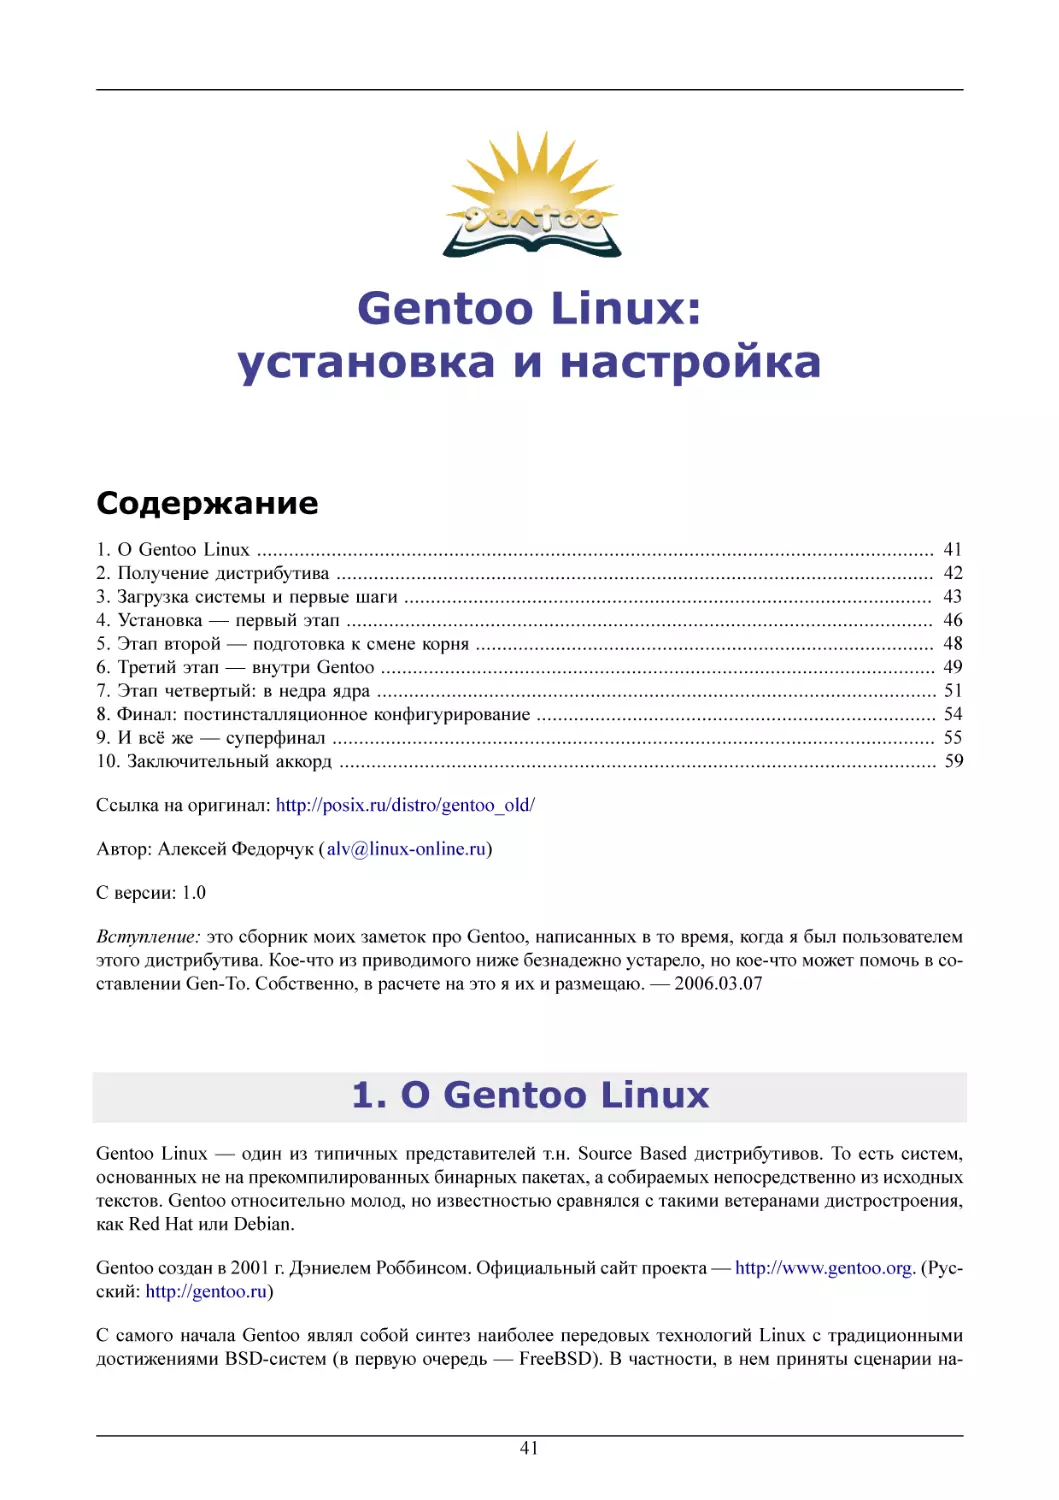 Gentoo Linux
О Gentoo Linux